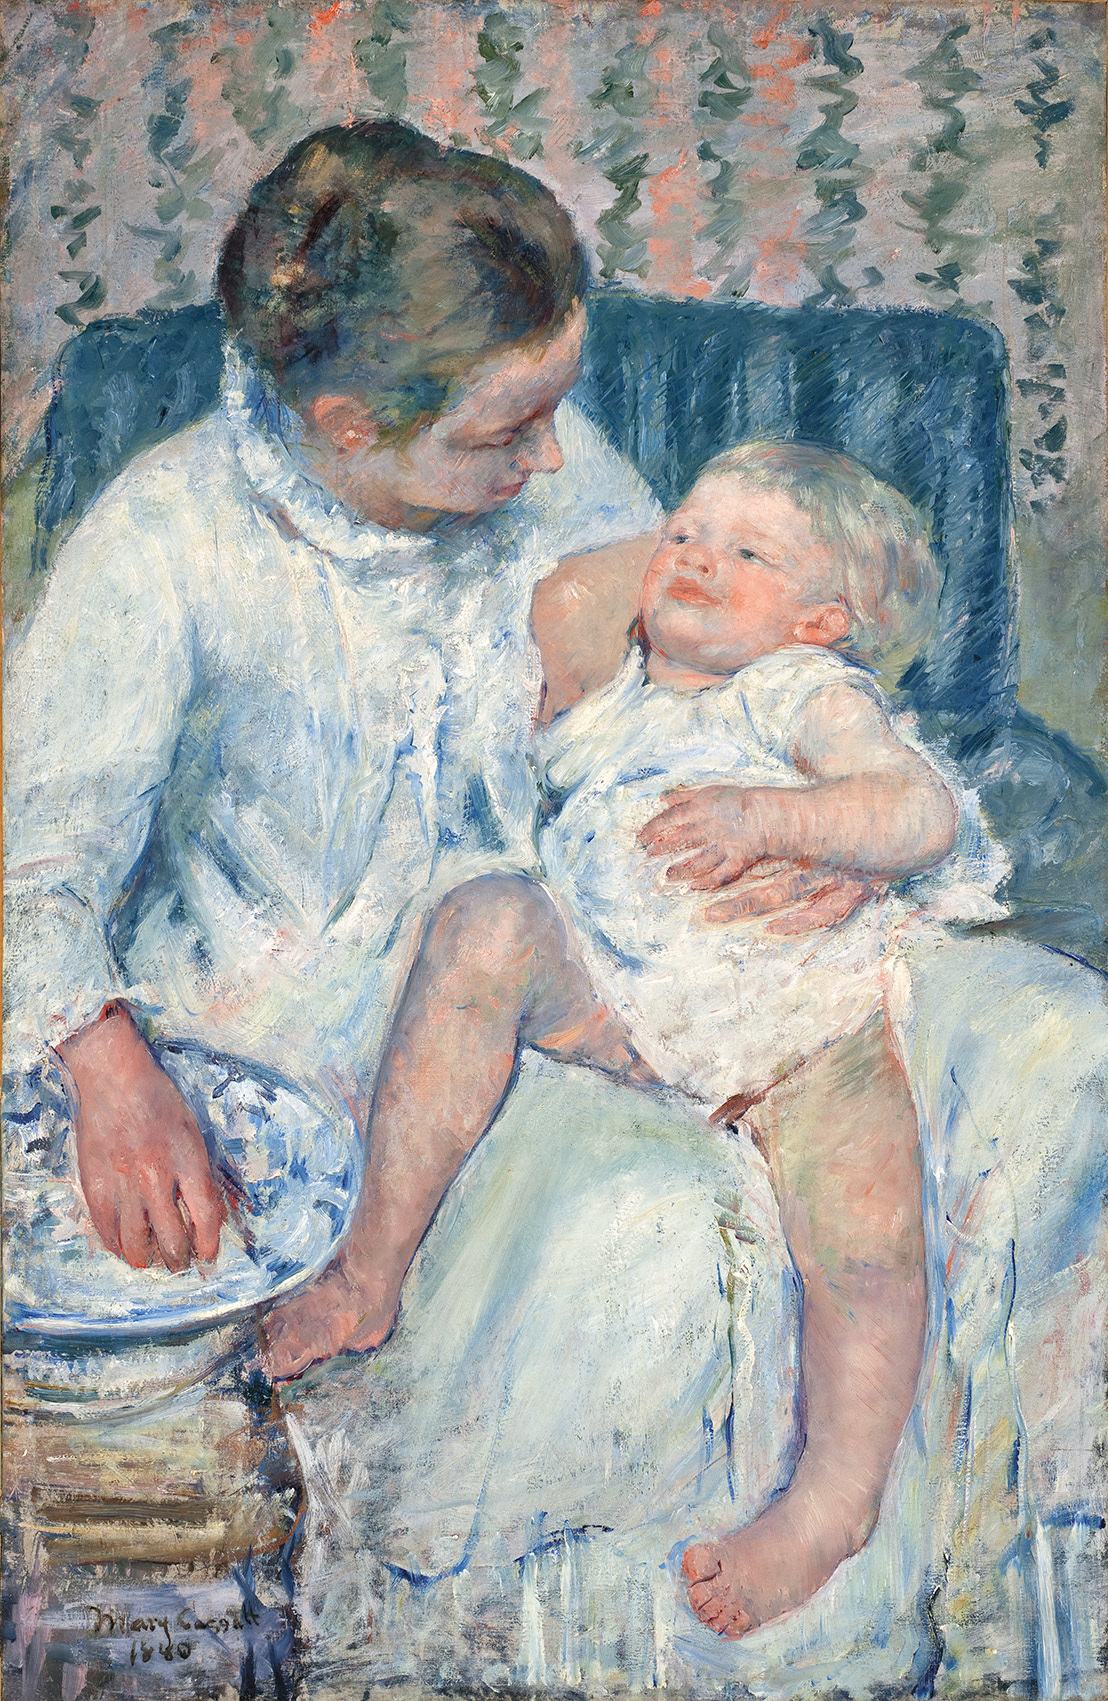 《眠たい子どもを沐浴させる母親》1880年、油彩・カンヴァス、100.3×65.7cm、ロサンゼルス郡立美術館蔵